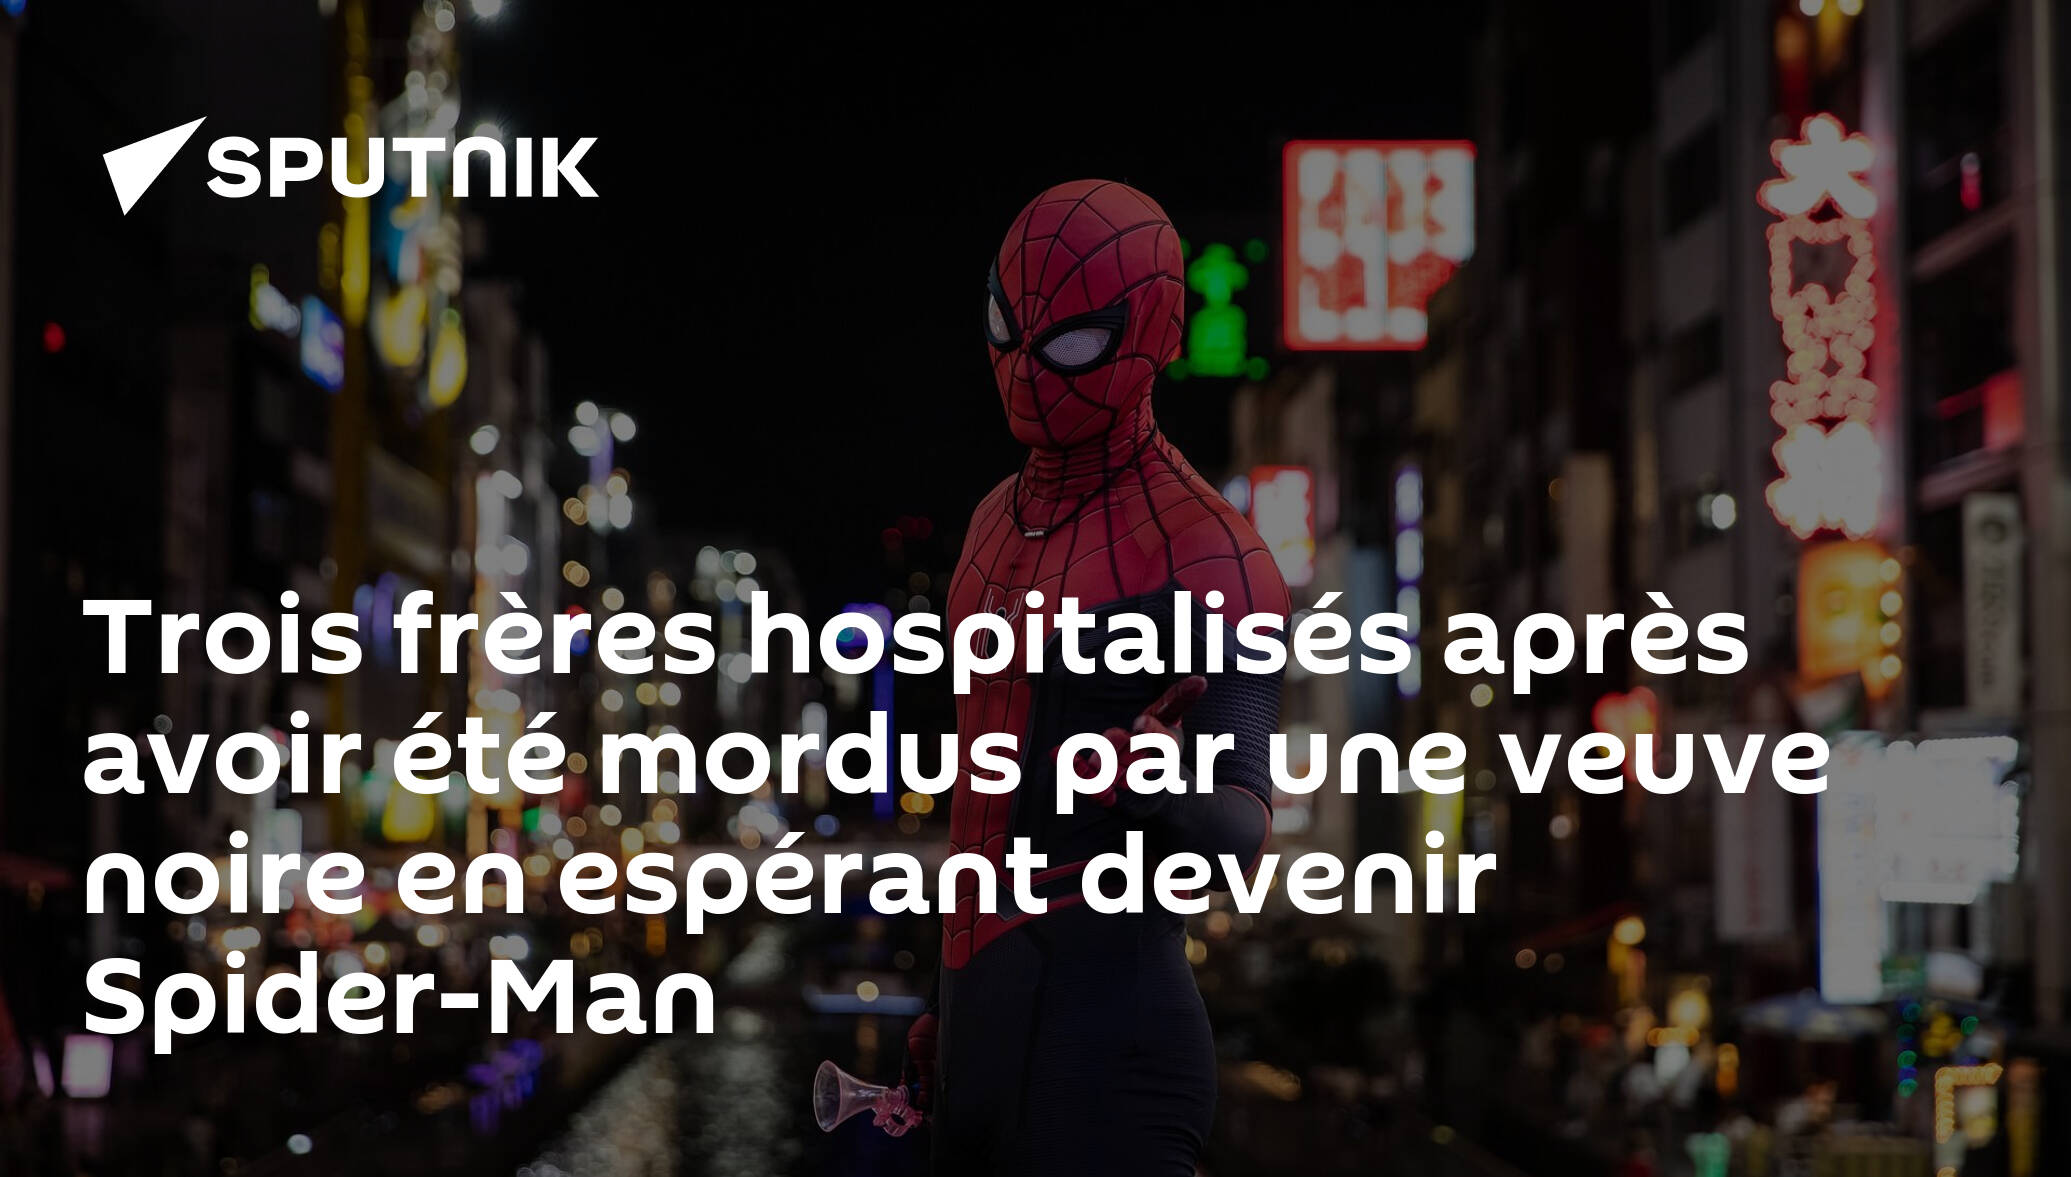 Ils se laissent mordre par une veuve noire pour devenir Spiderman et  finissent à l'hôpital